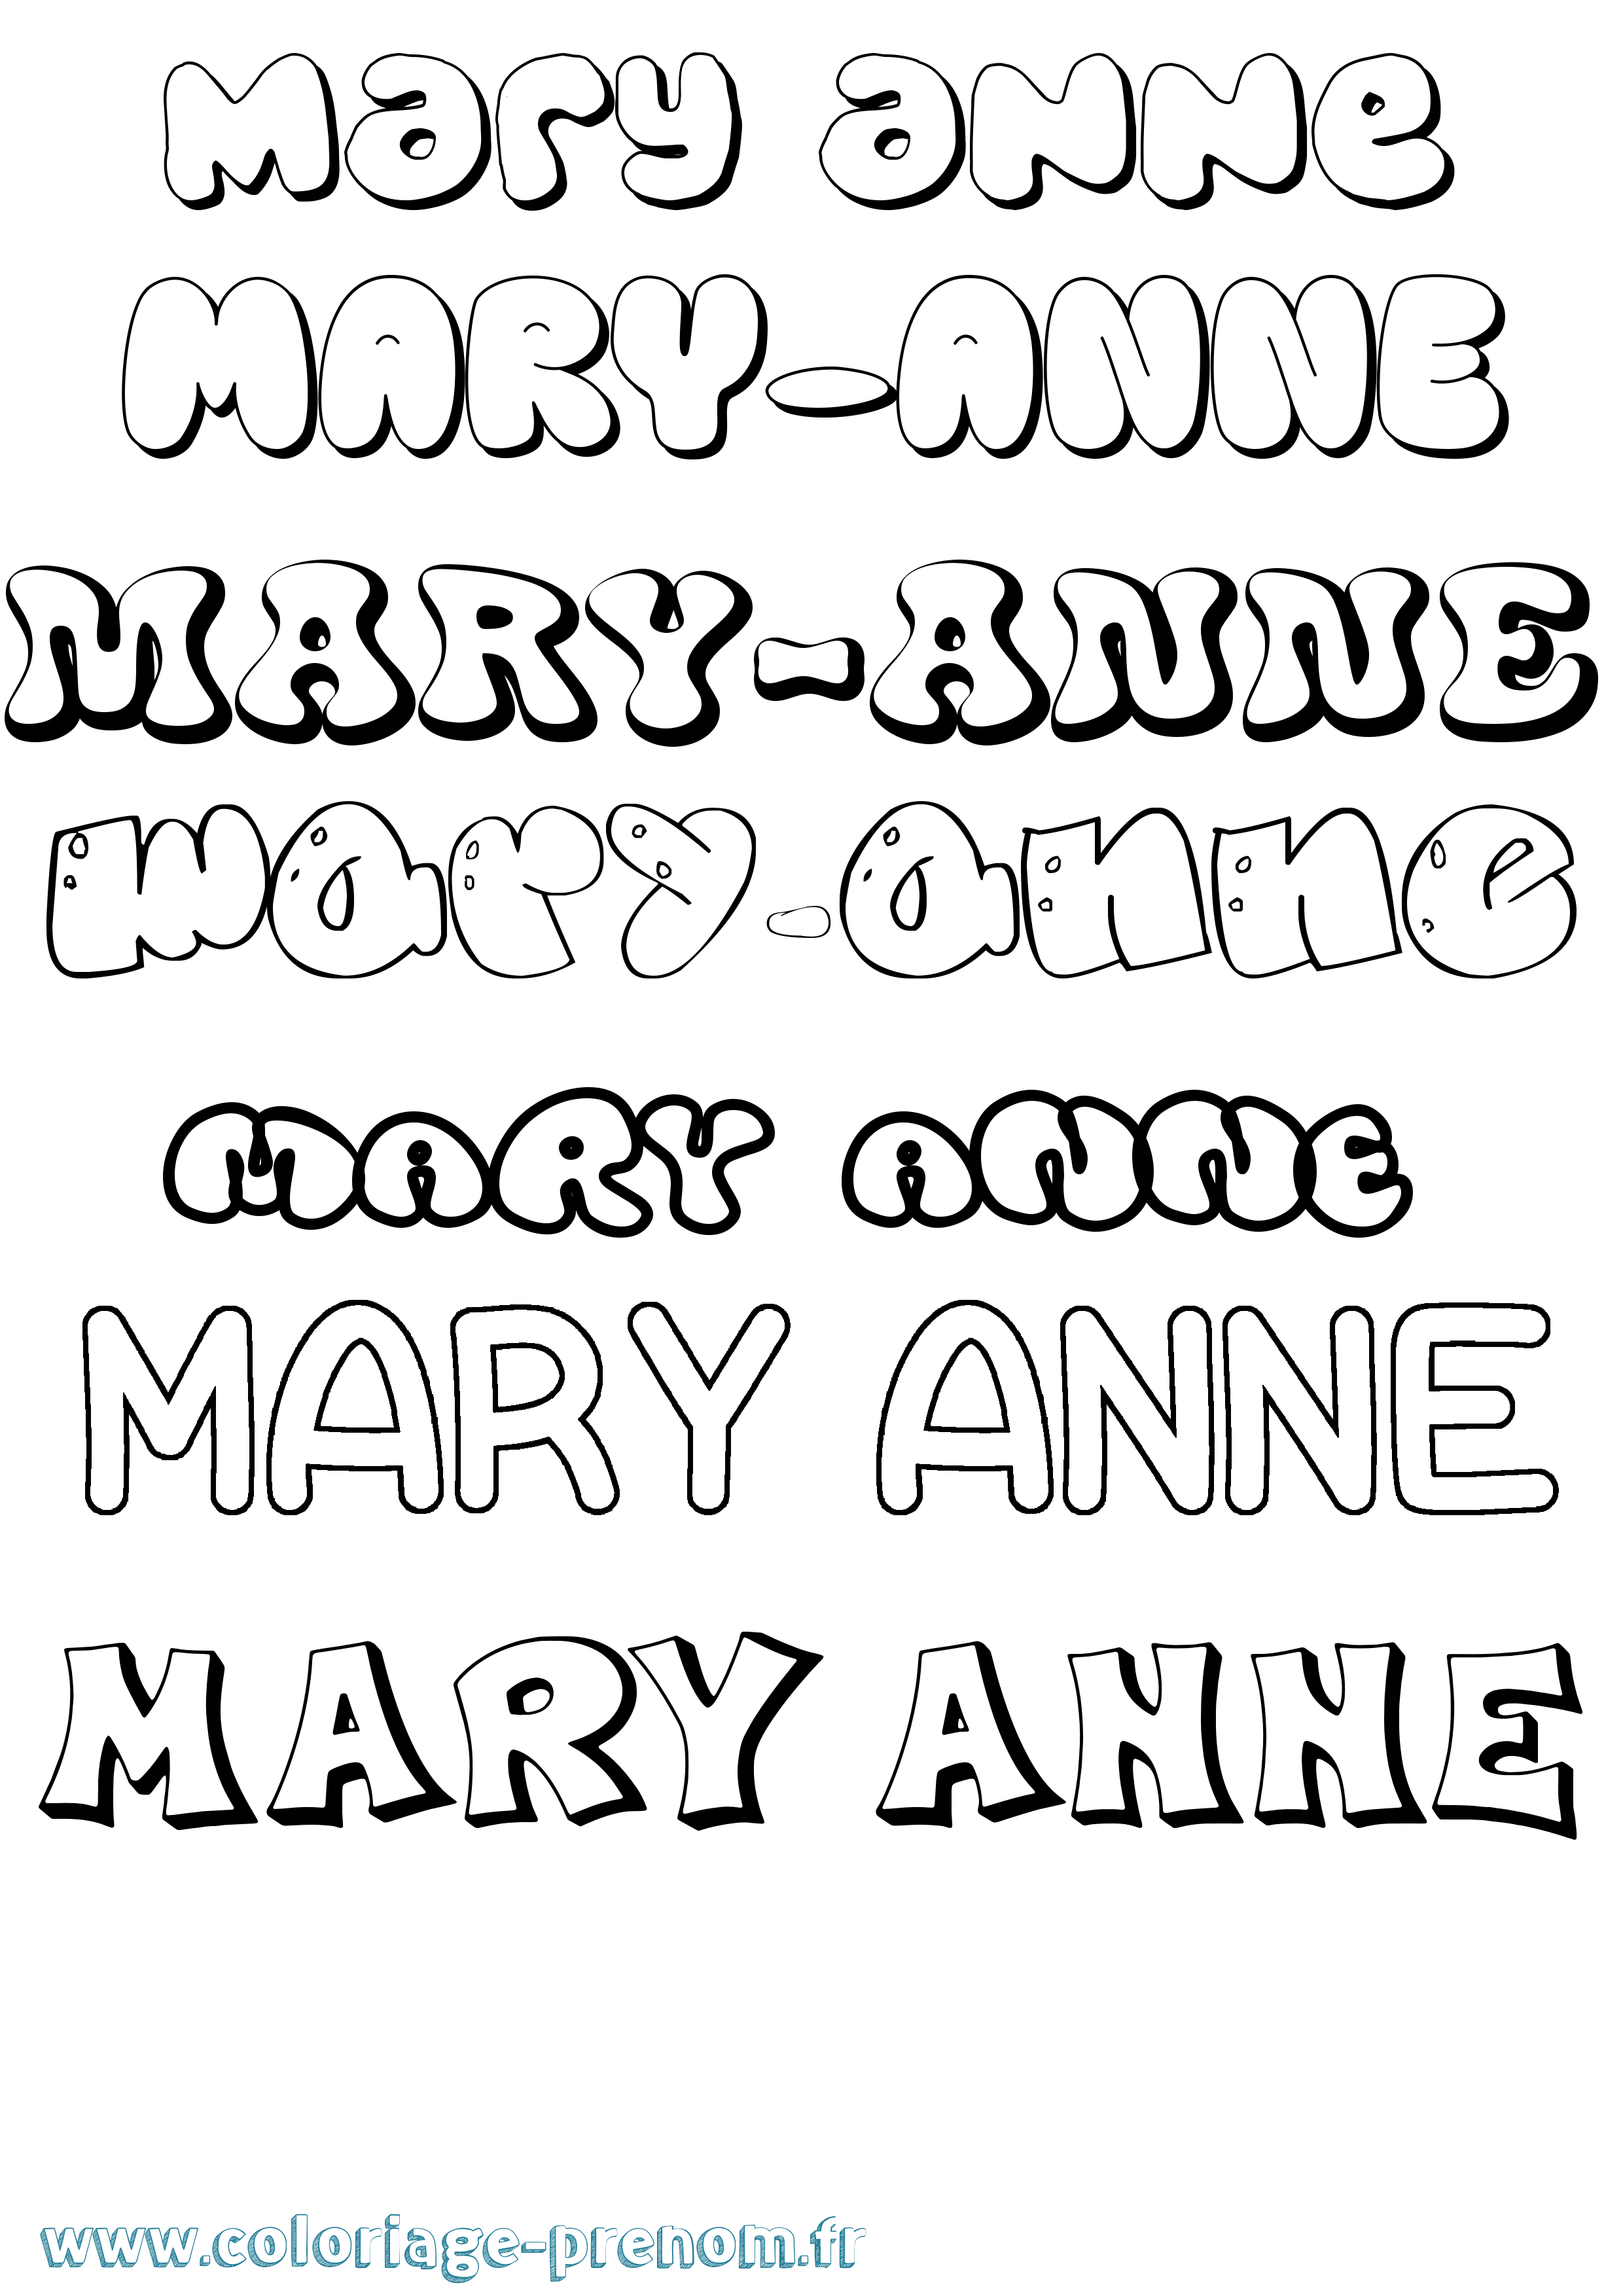 Coloriage prénom Mary-Anne Bubble